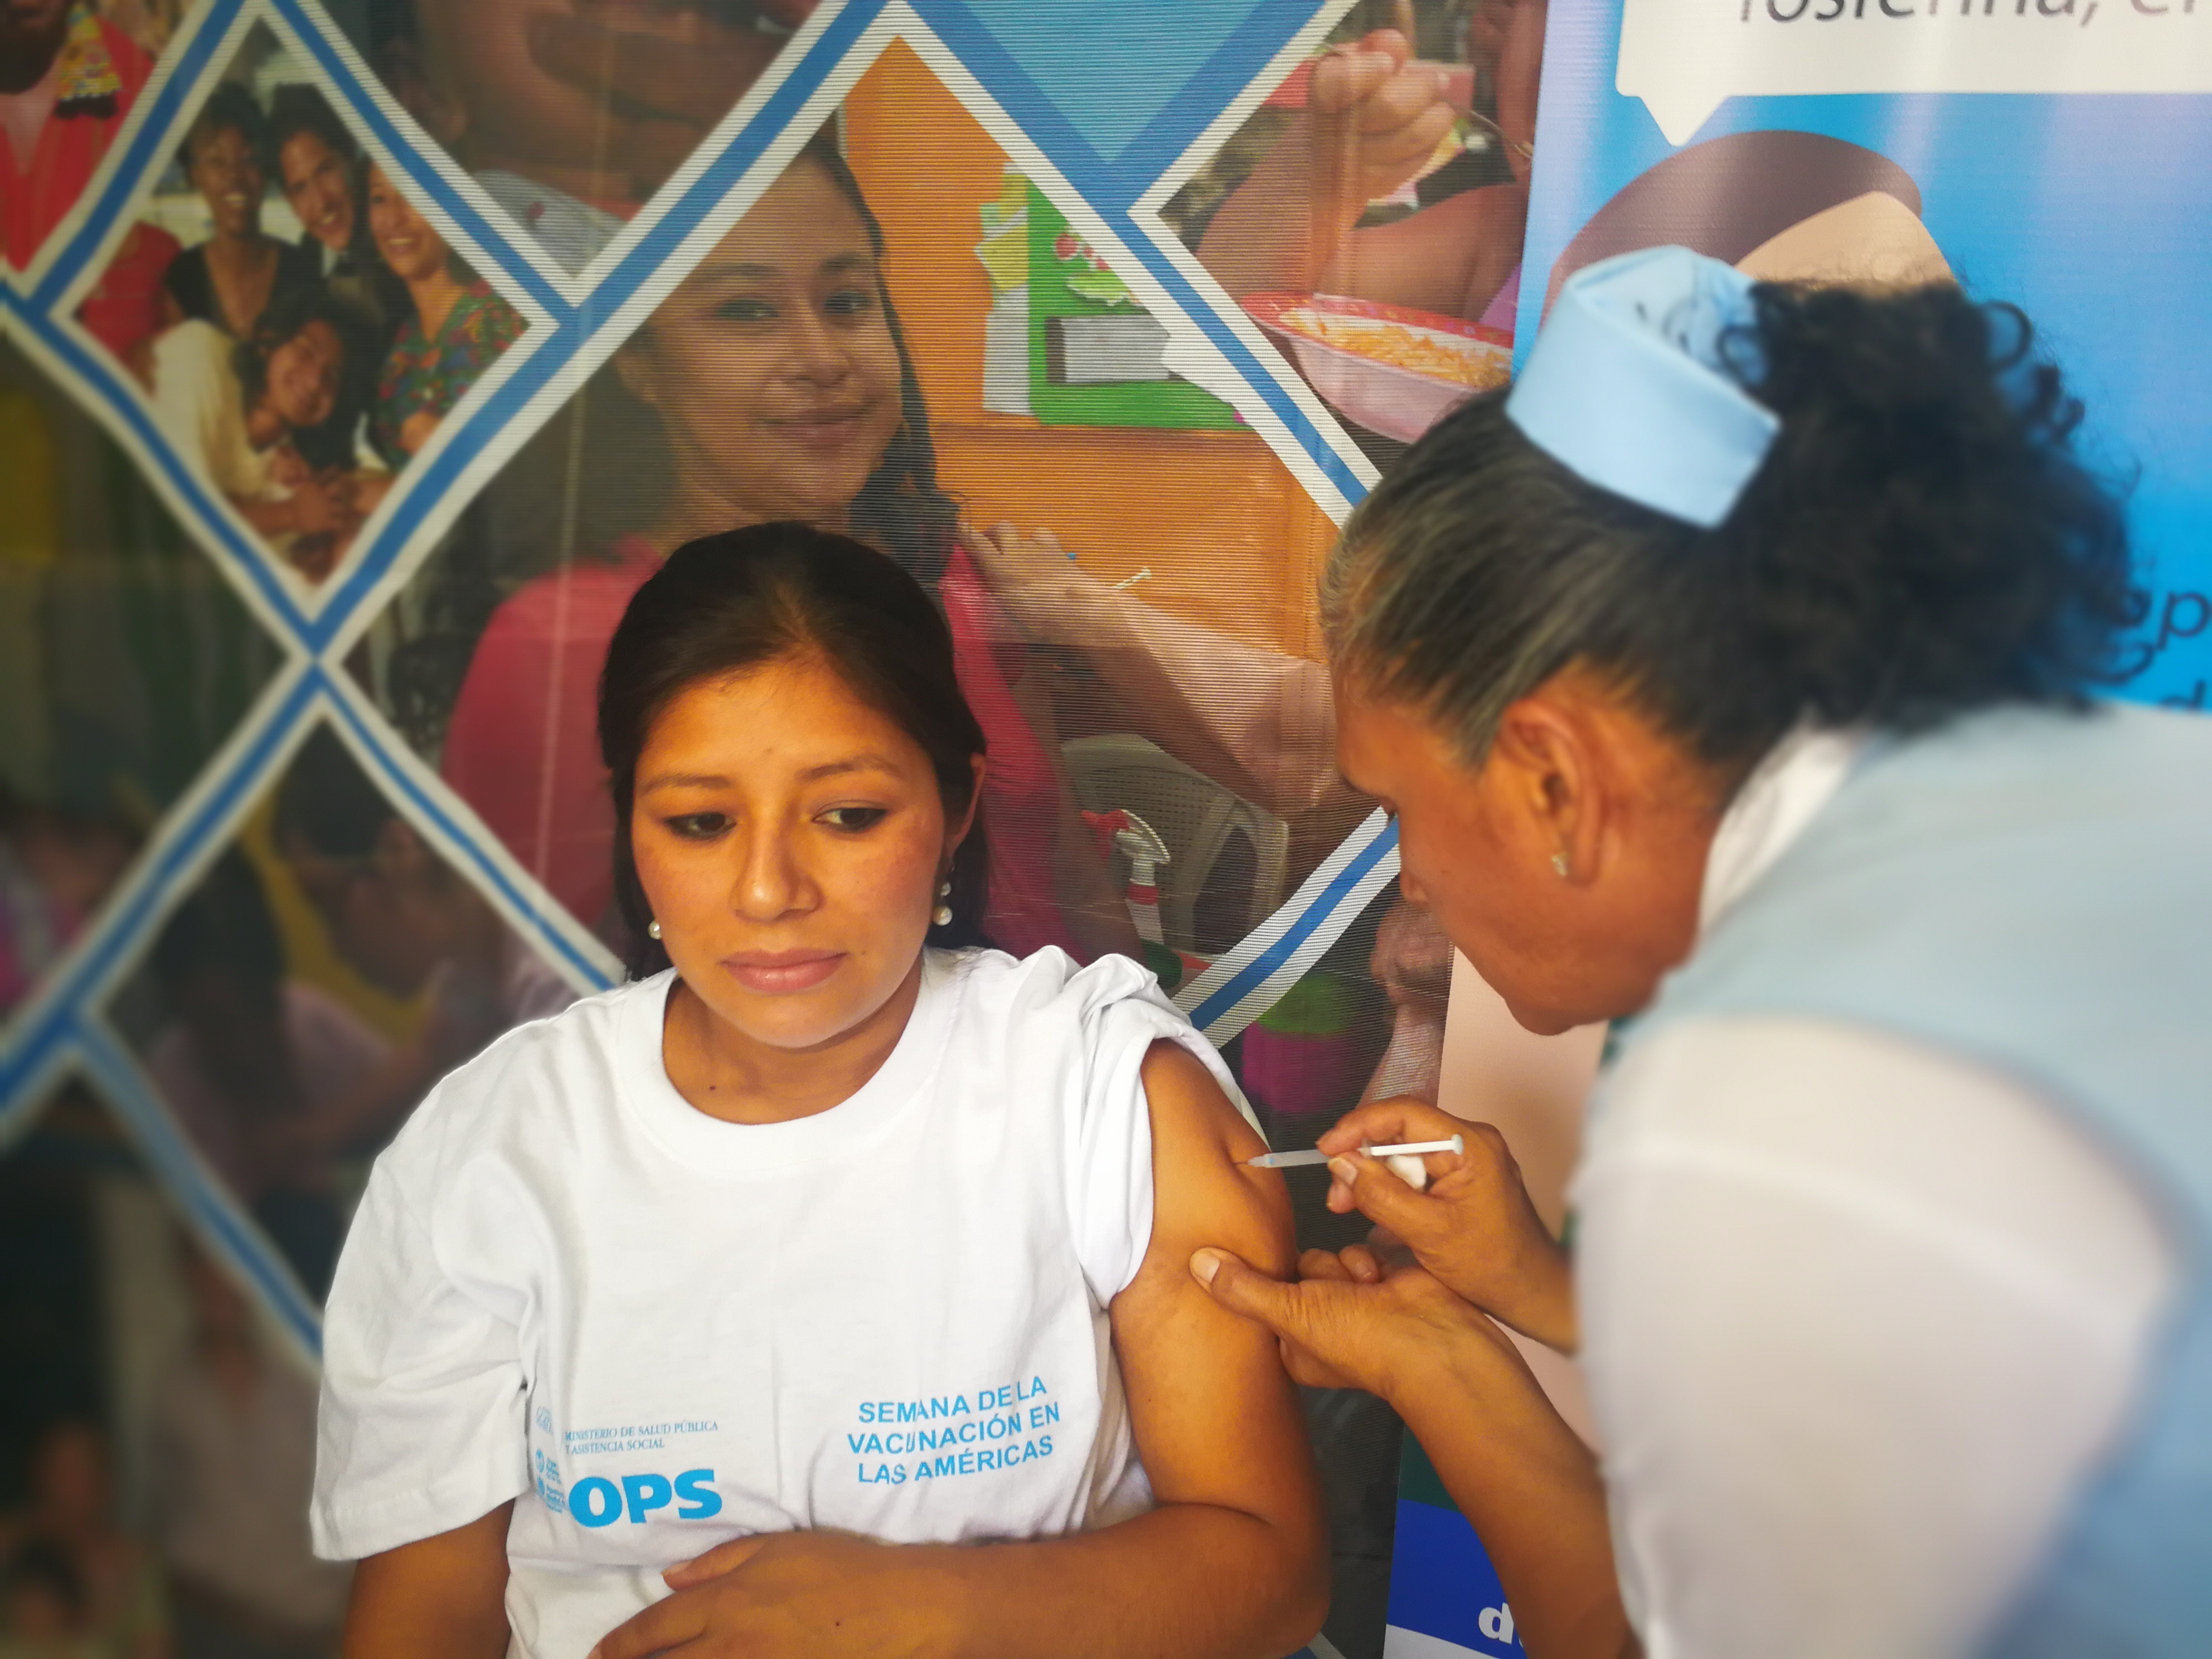 La vacuna Tdap se aplica mujeres embarazadas a partir de los cinco meses de gestación. (Foto Prensa Libre: Ana Lucía Ola)